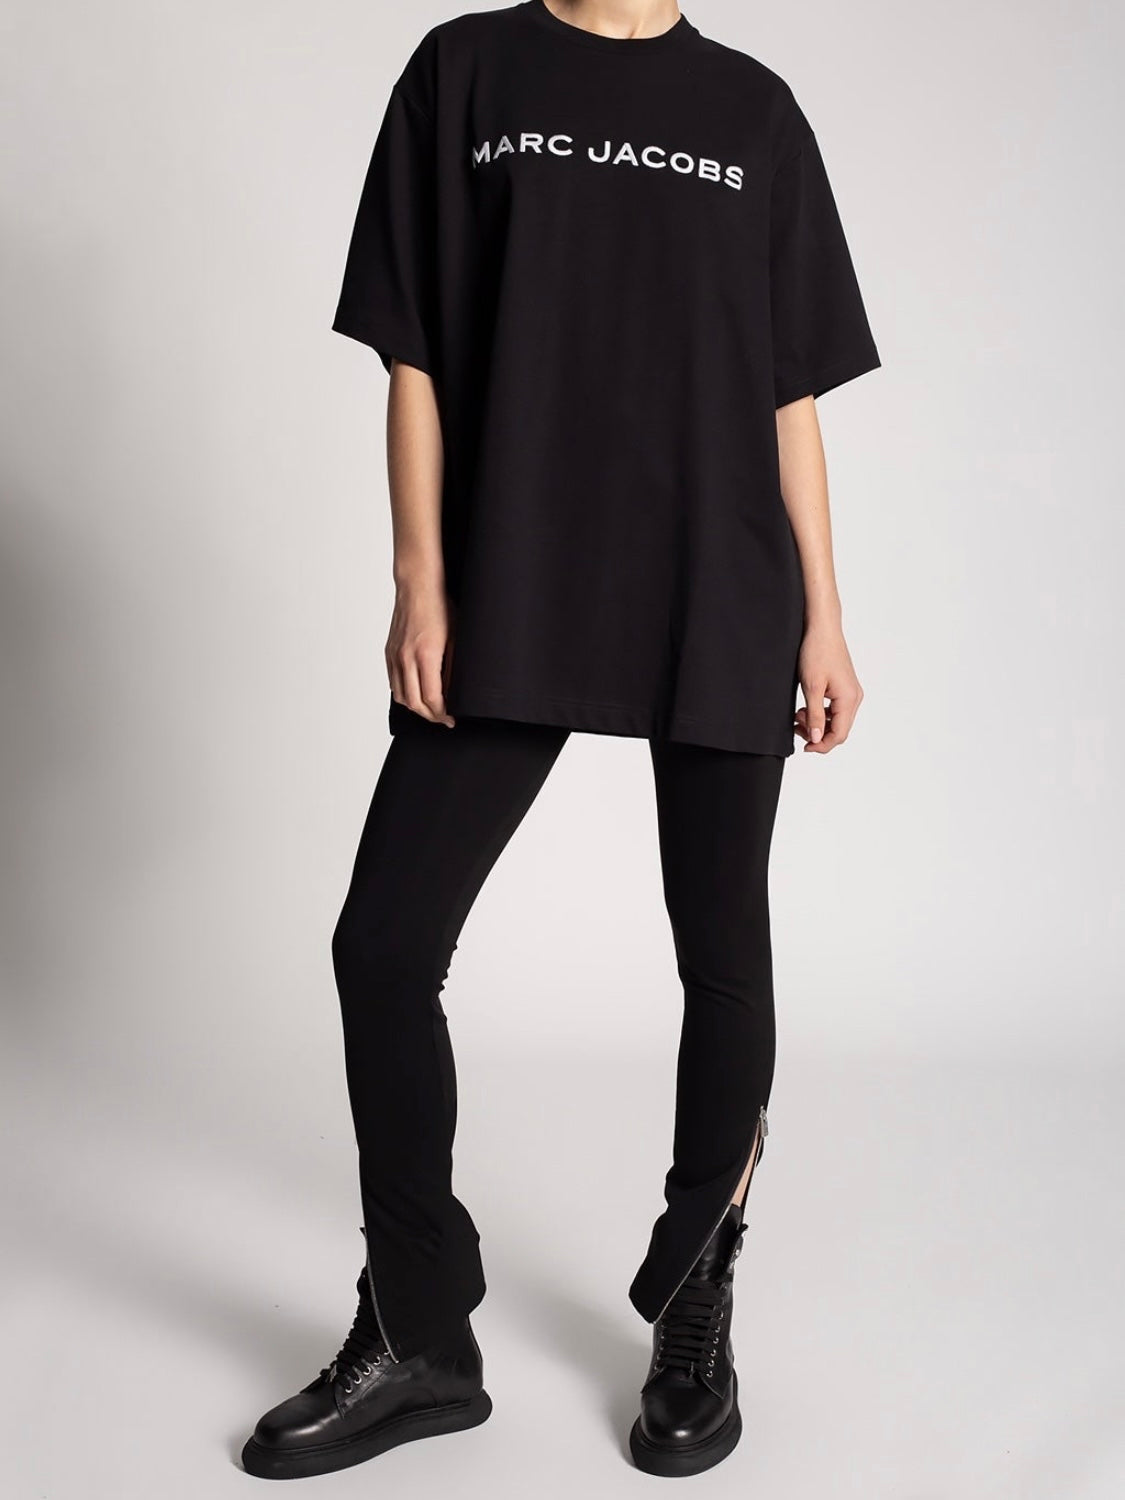 MARC JACOBS The Big T-Shirt Oversized, Black, 1 SIZE – VIASHOP